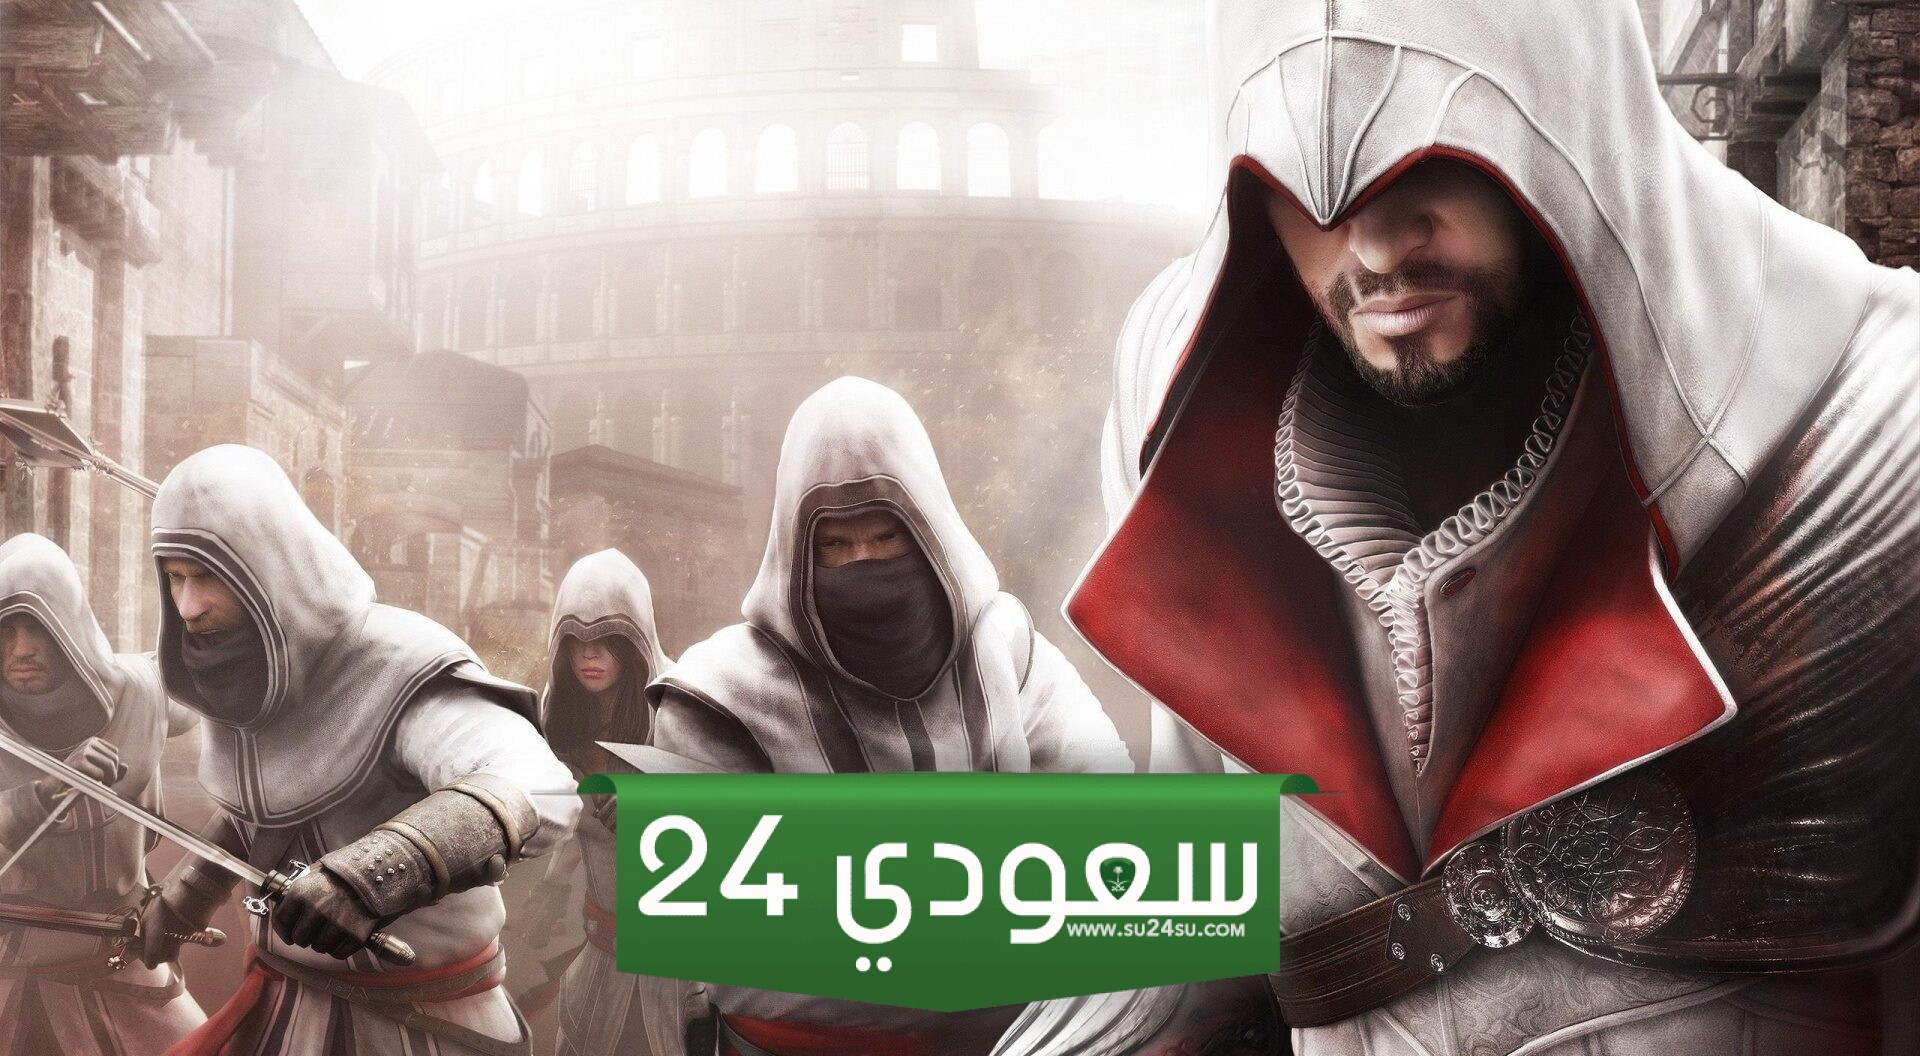 ما هي أفضل ألعاب Assassin’s Creed بحسب آراء اللاعبين؟